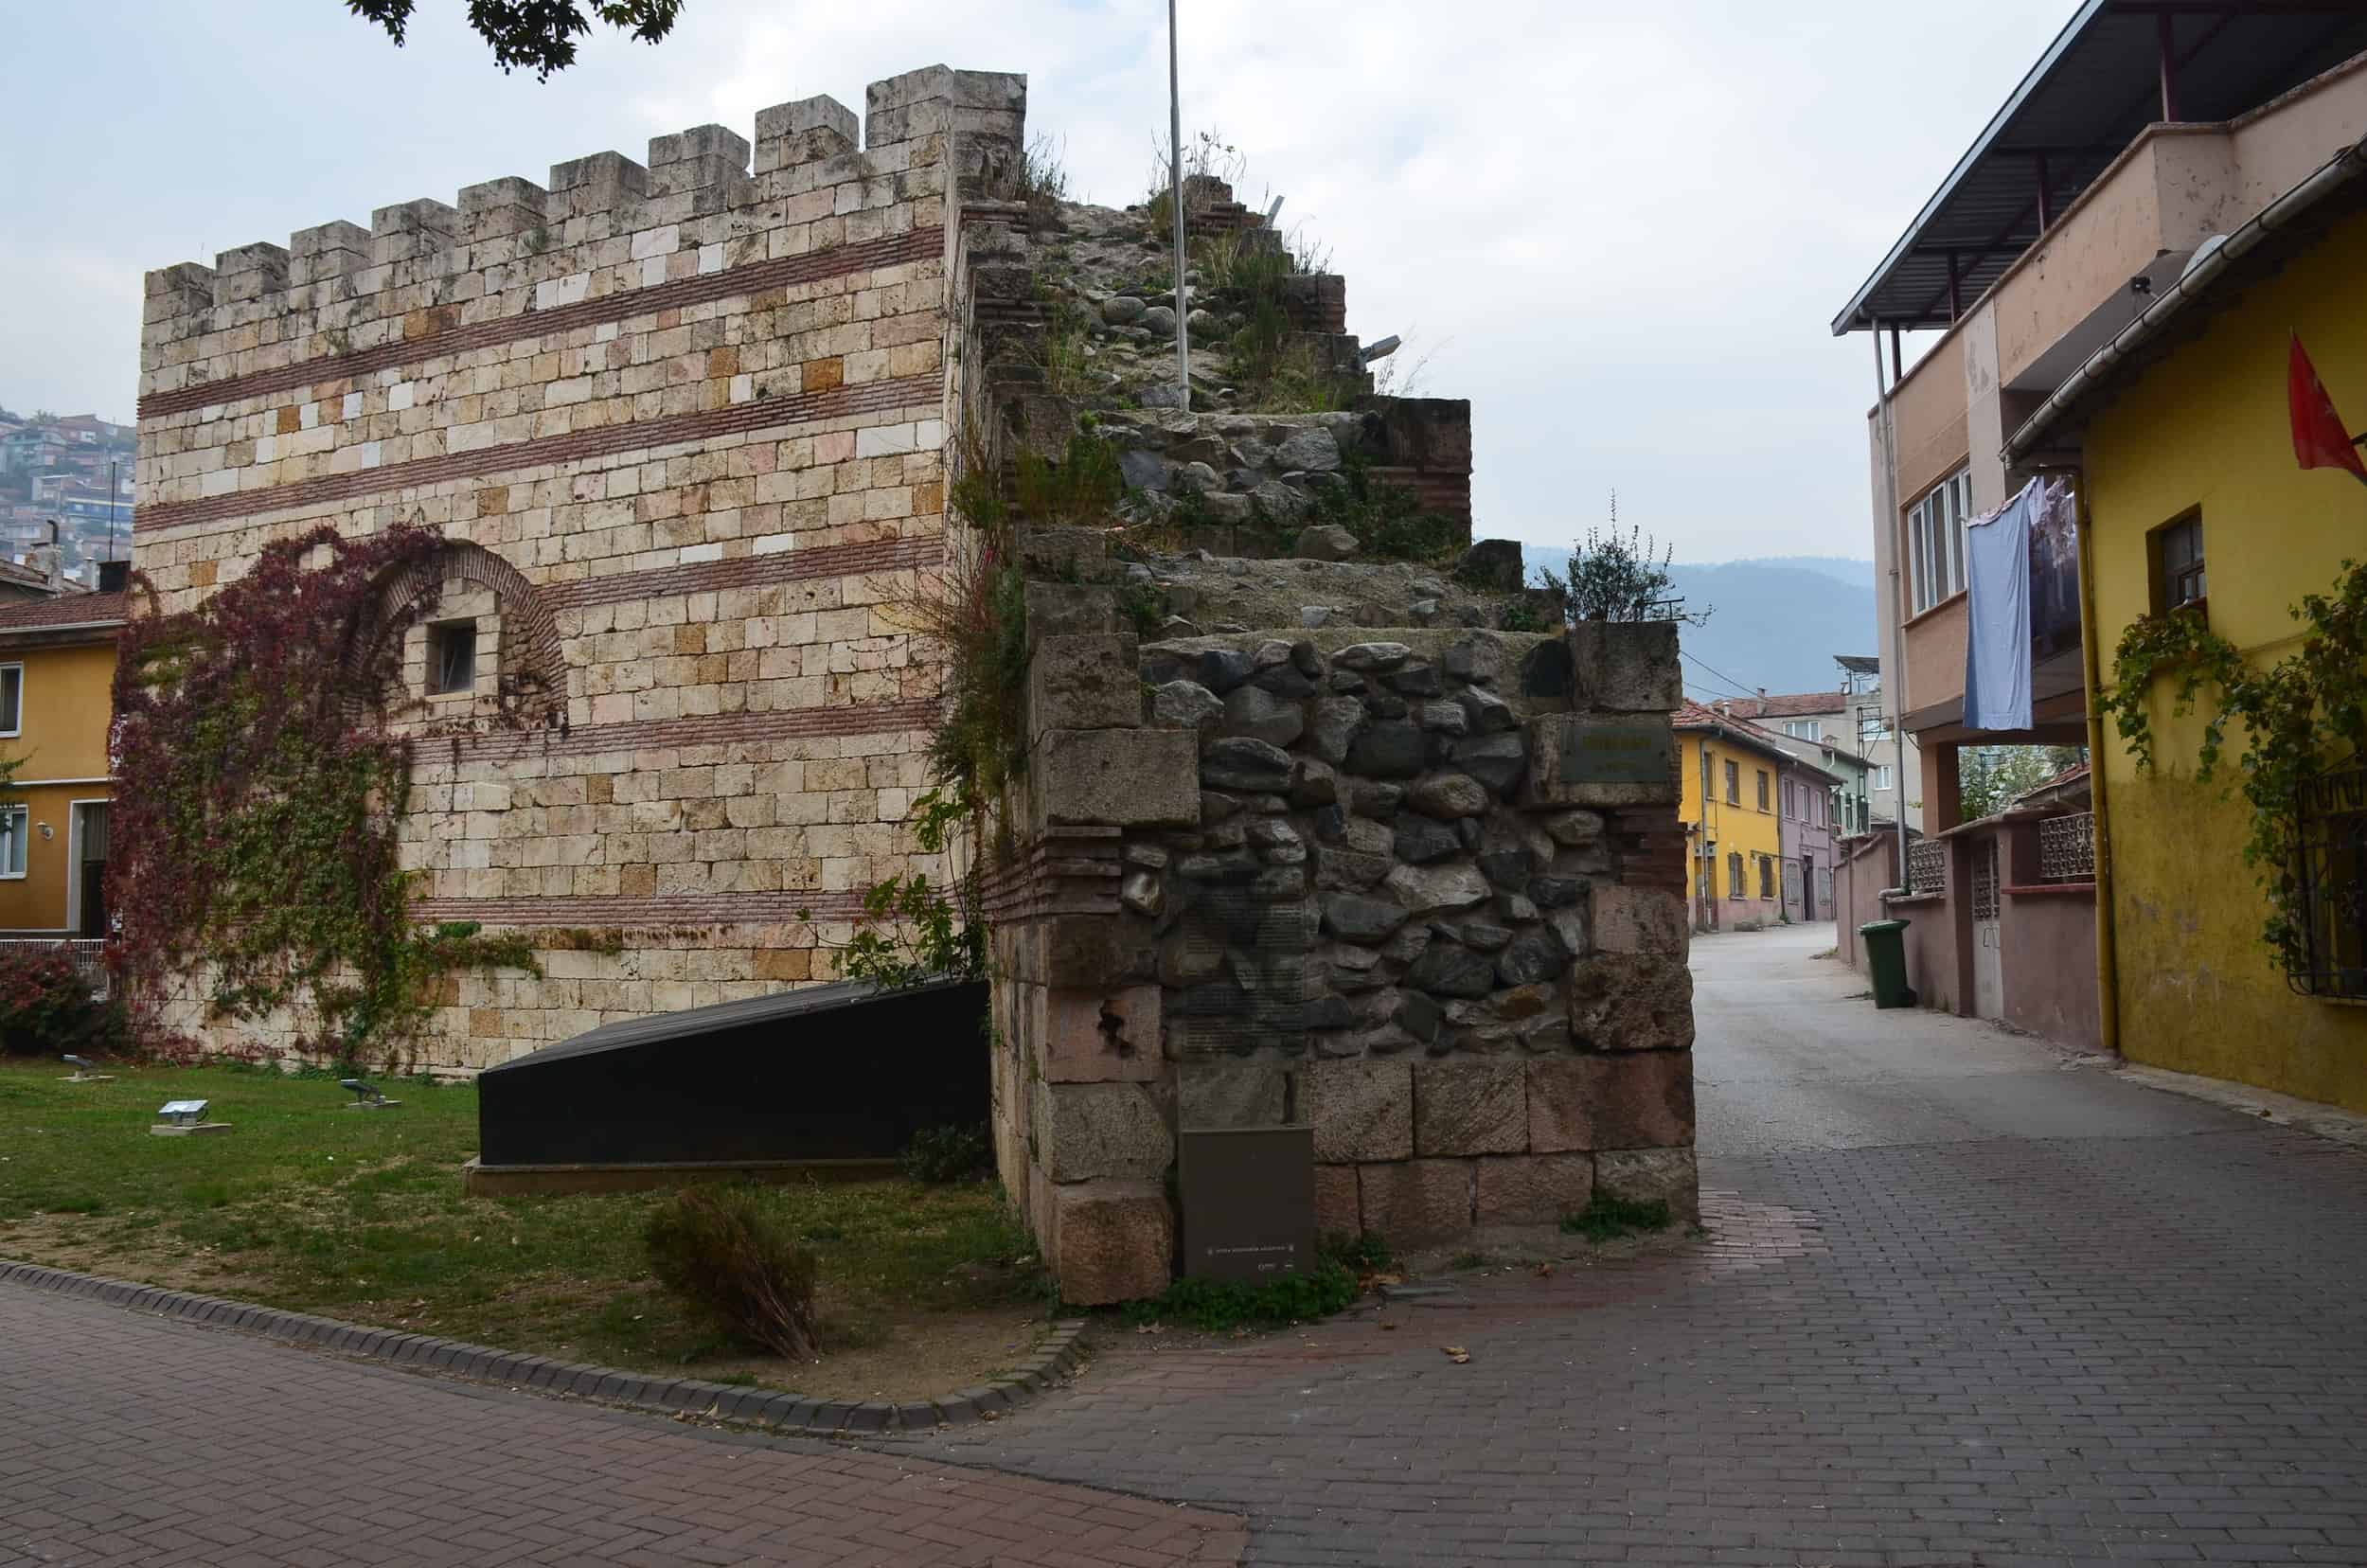 Conquest Gate on the walls of Bursa Castle in Bursa, Turkey